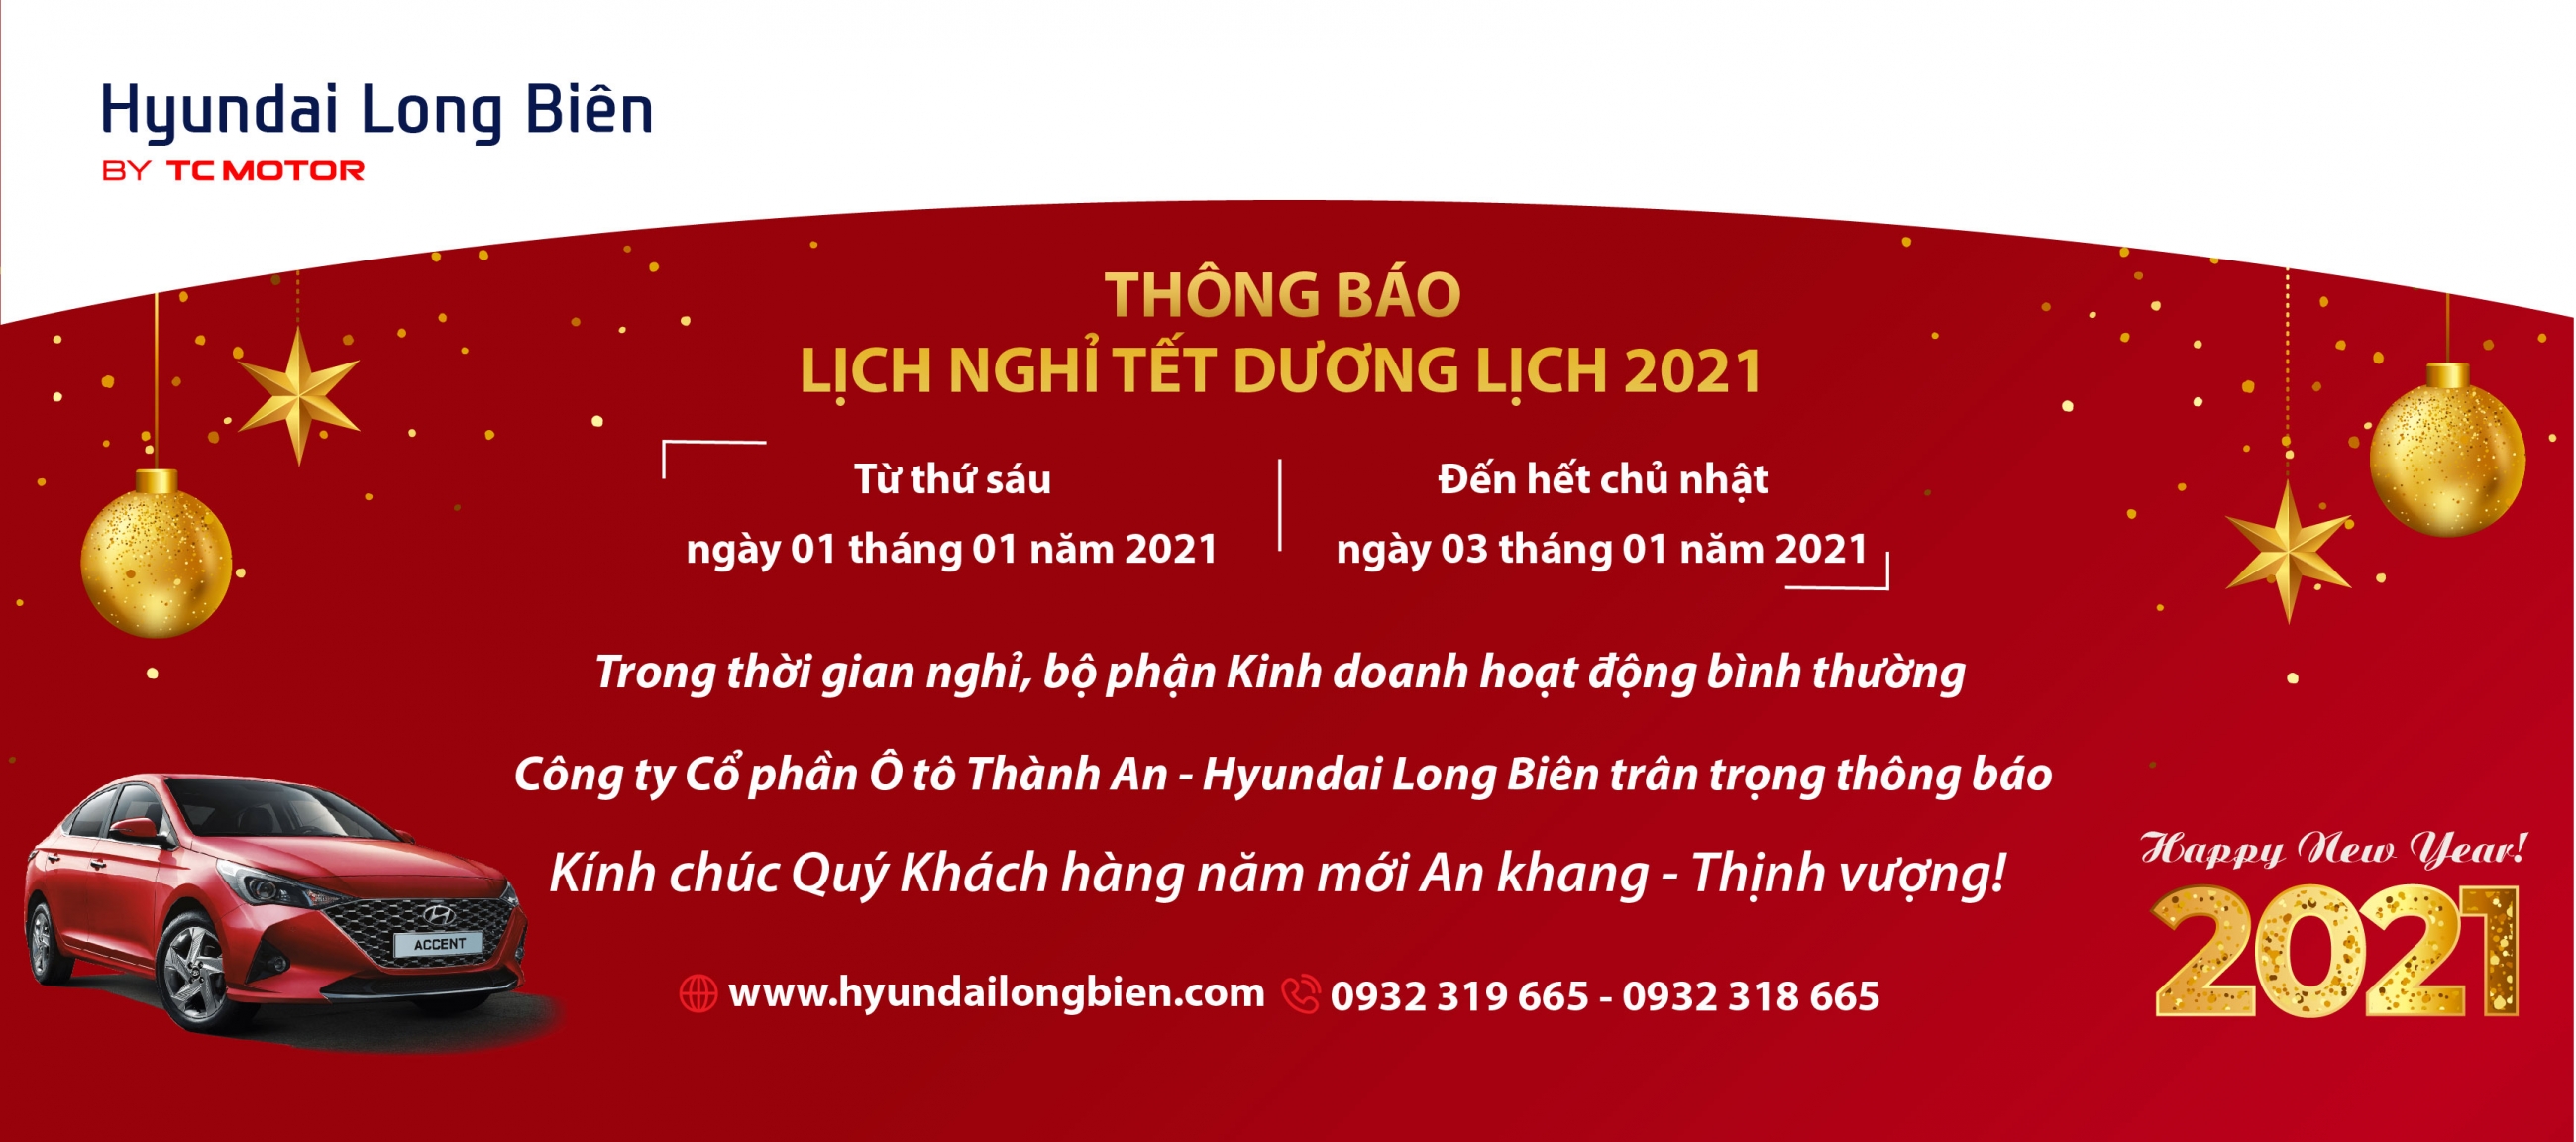 Hyundai Long Biên thông báo lịch nghỉ Tết dương lịch 2021